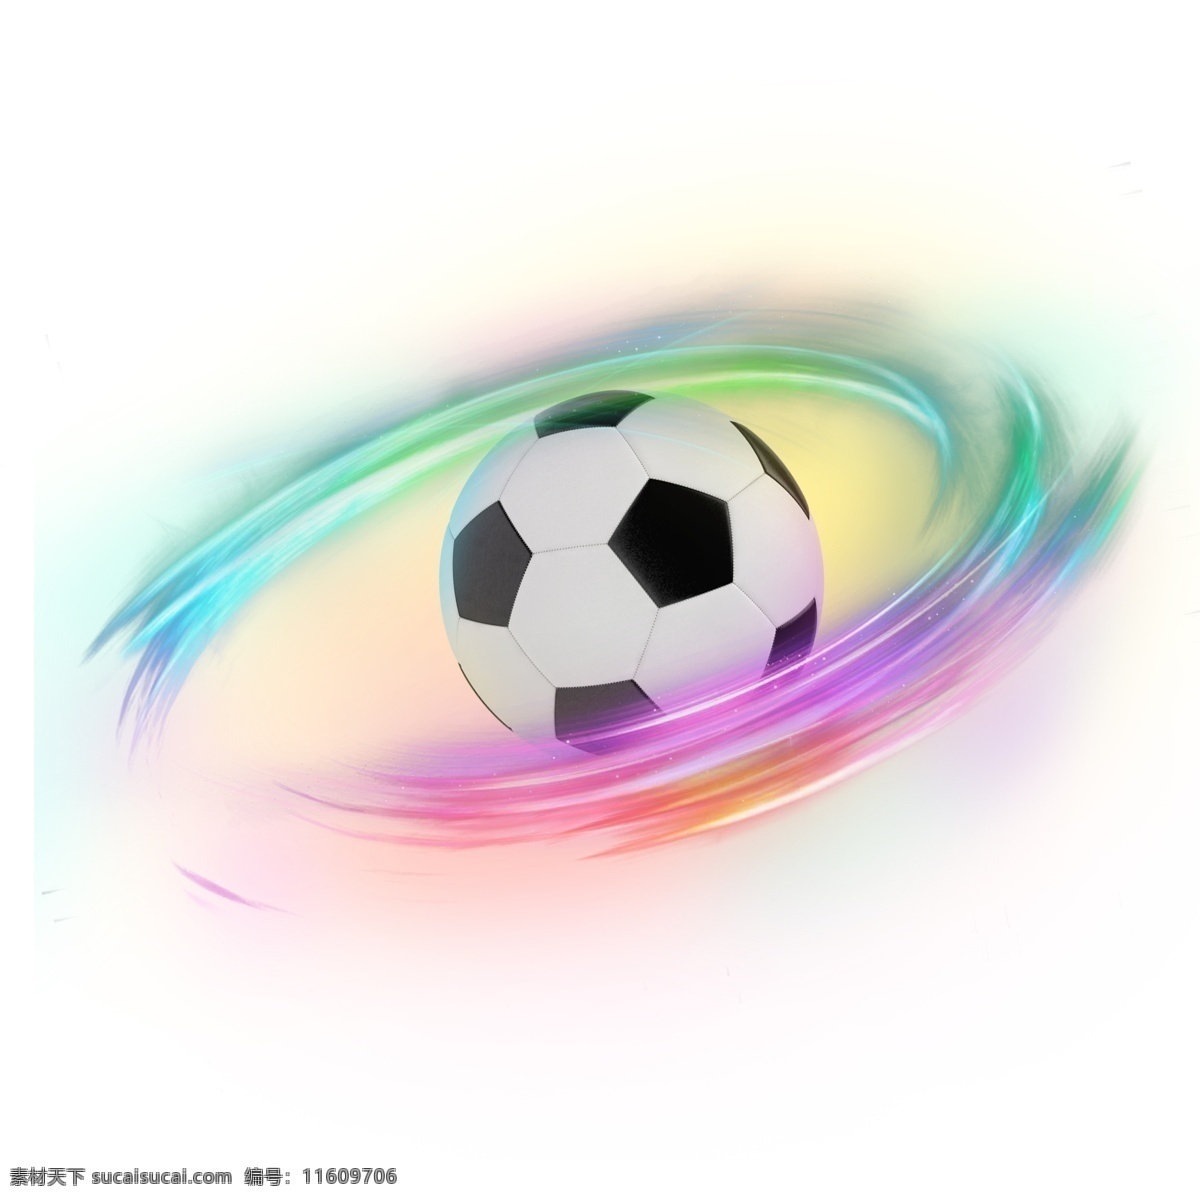 彩色 炫 光 科技 足球 足球旋涡 手绘 足球比赛 世界杯 俄罗斯世界杯 炫彩足球 炫酷足球 渐变 现代感 线条 扭曲 世界杯设计